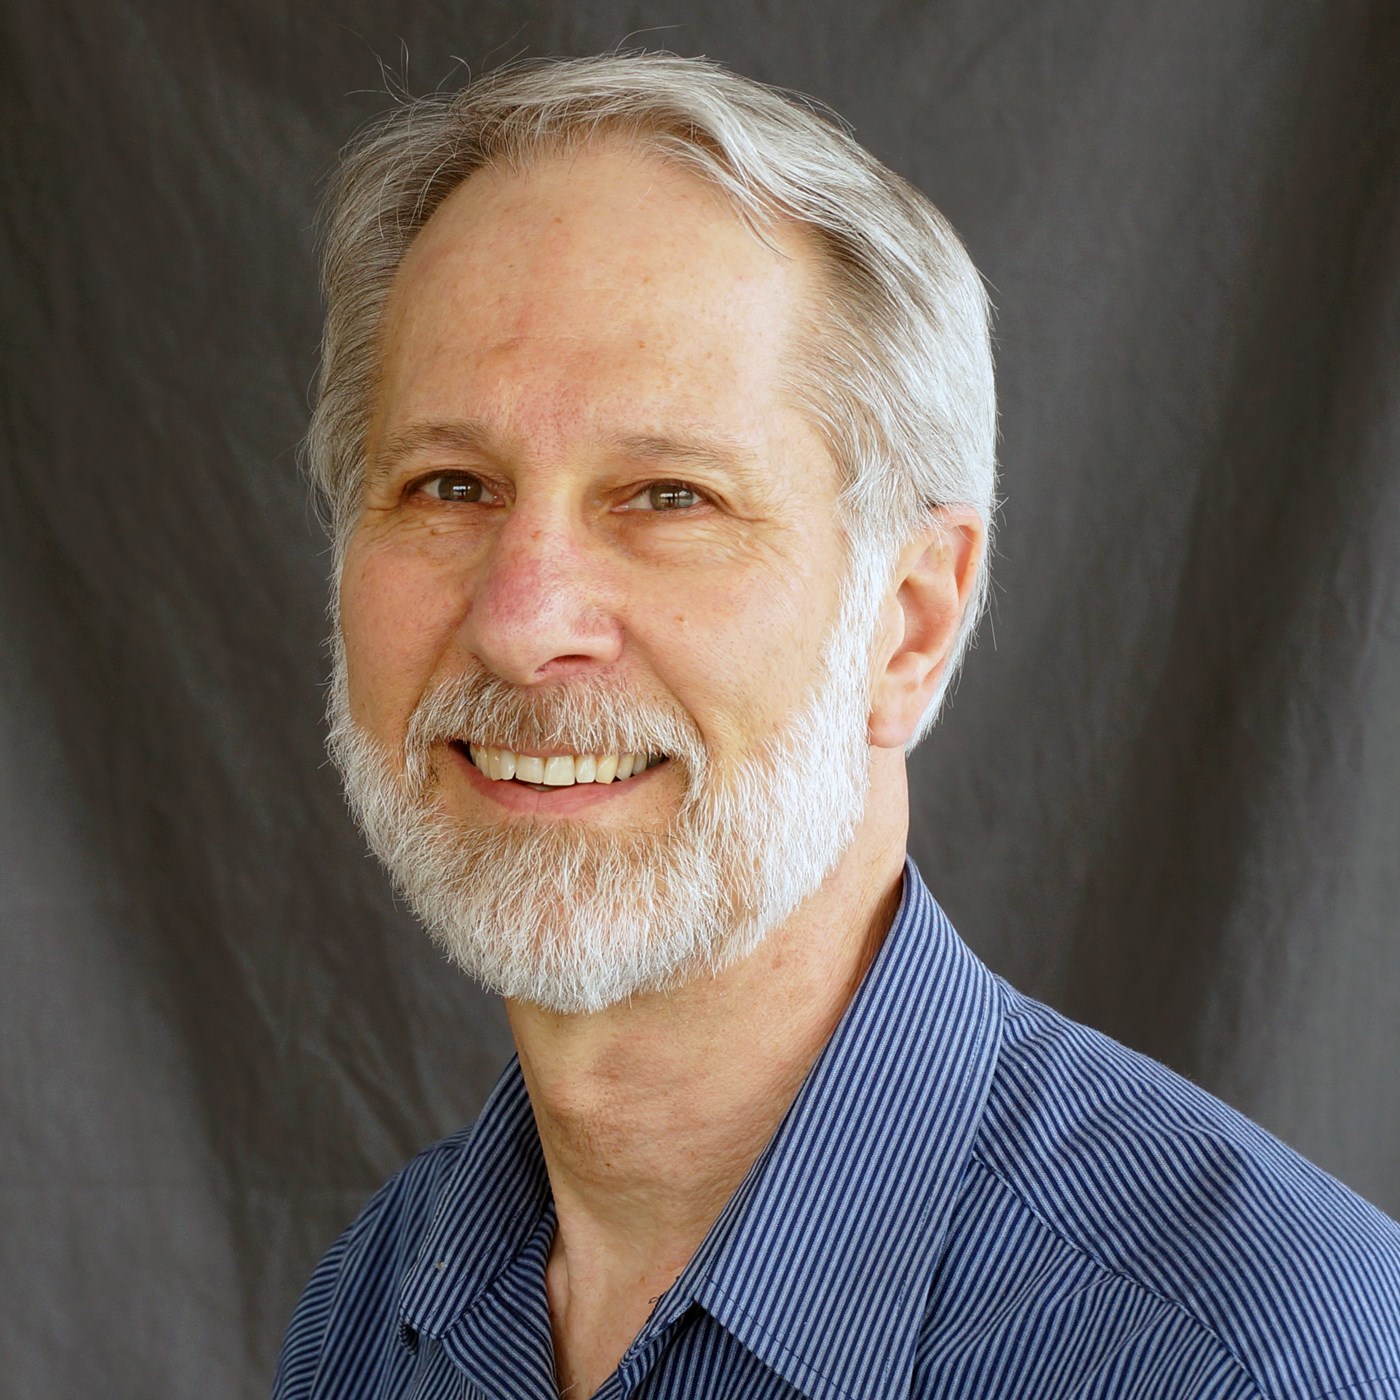 Robert Henning is an Associate Professor, Industrial/Organizational Psychology Department at UCONN and UMass Lowell's CPH-NEW.